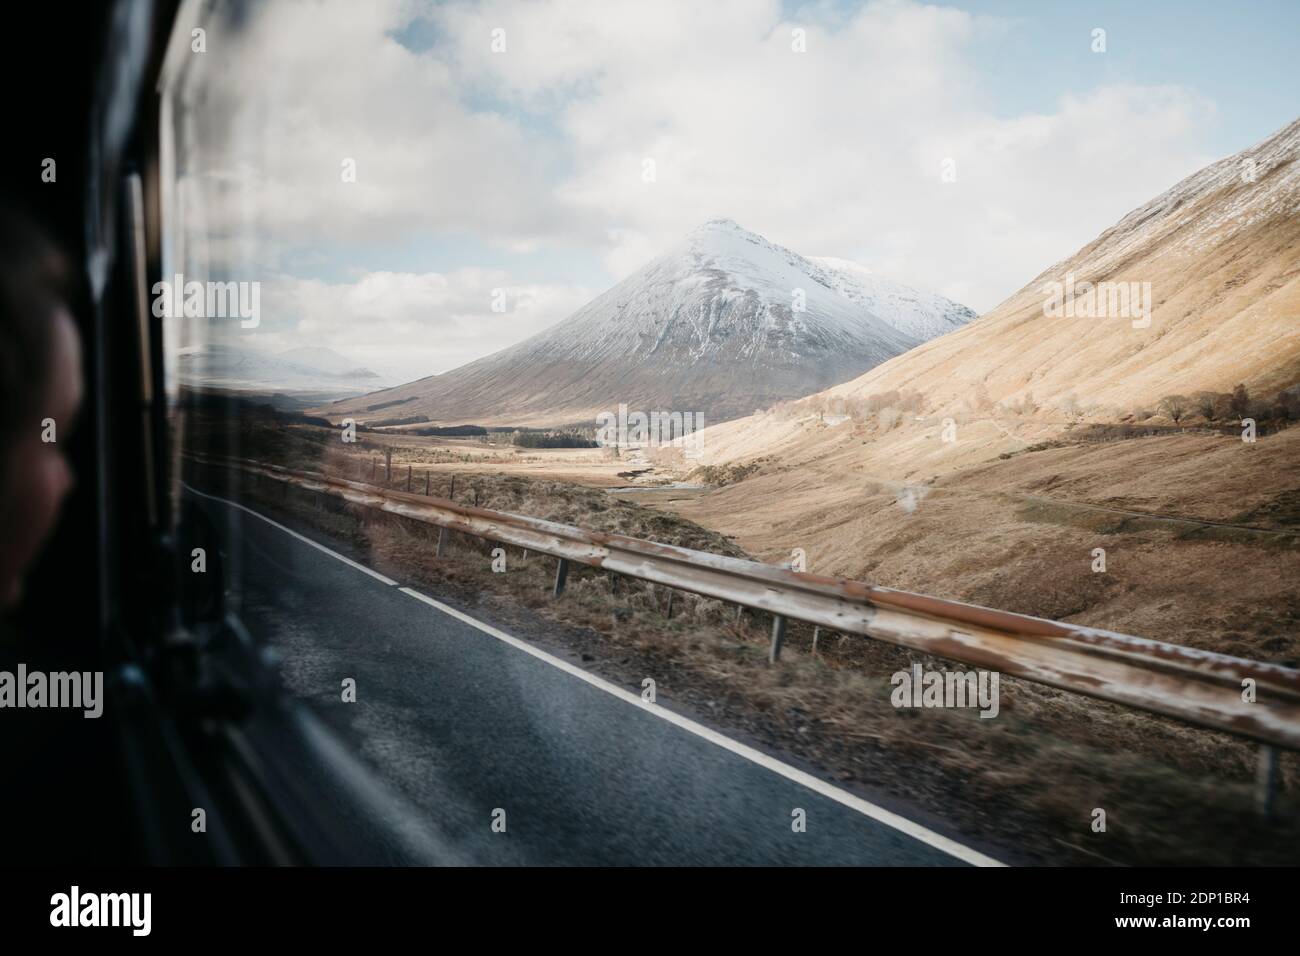 Großbritannien, Schottland, Loch Lomond und der Trossachs National Park, Strasse und Berg durch Auto Fenster gesehen Stockfoto